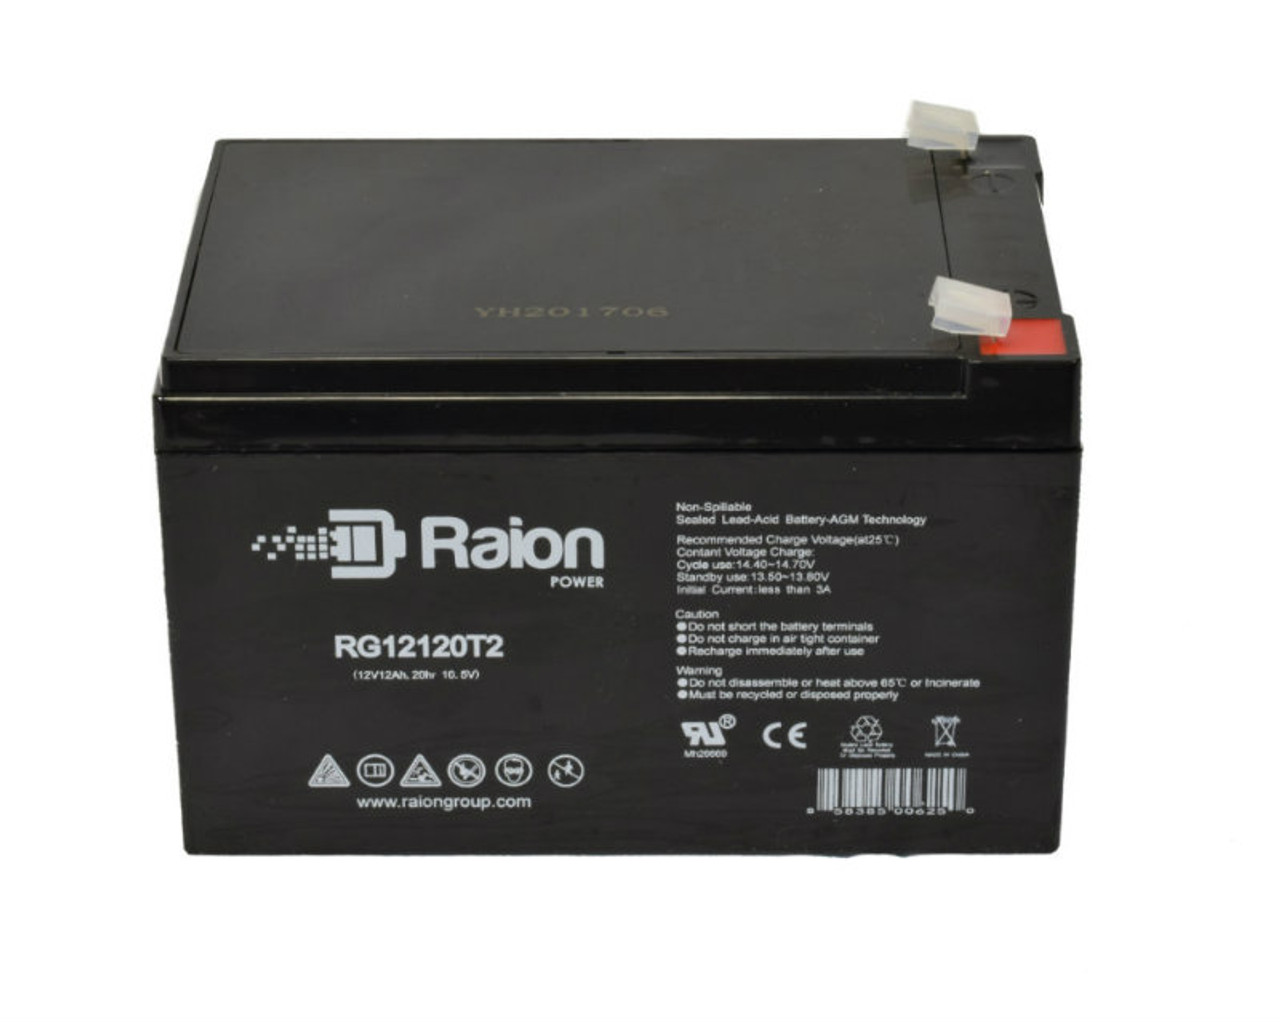 Raion Power RG12120T2 SLA Battery for Valen Topin 12 TP 12